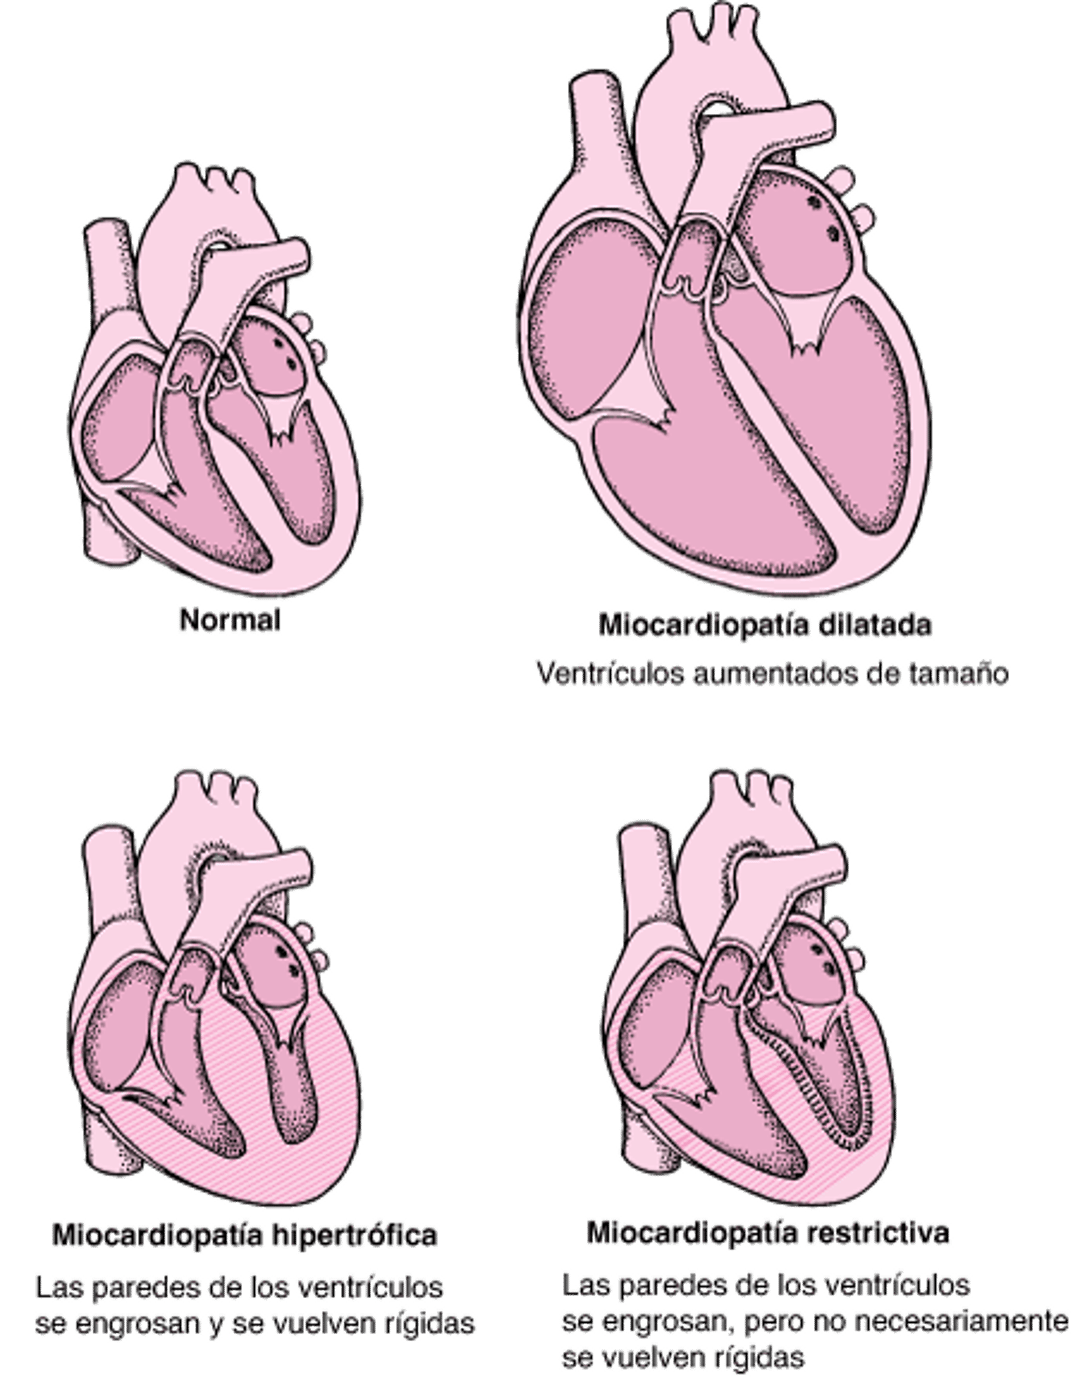 Tipos de miocardiopatías